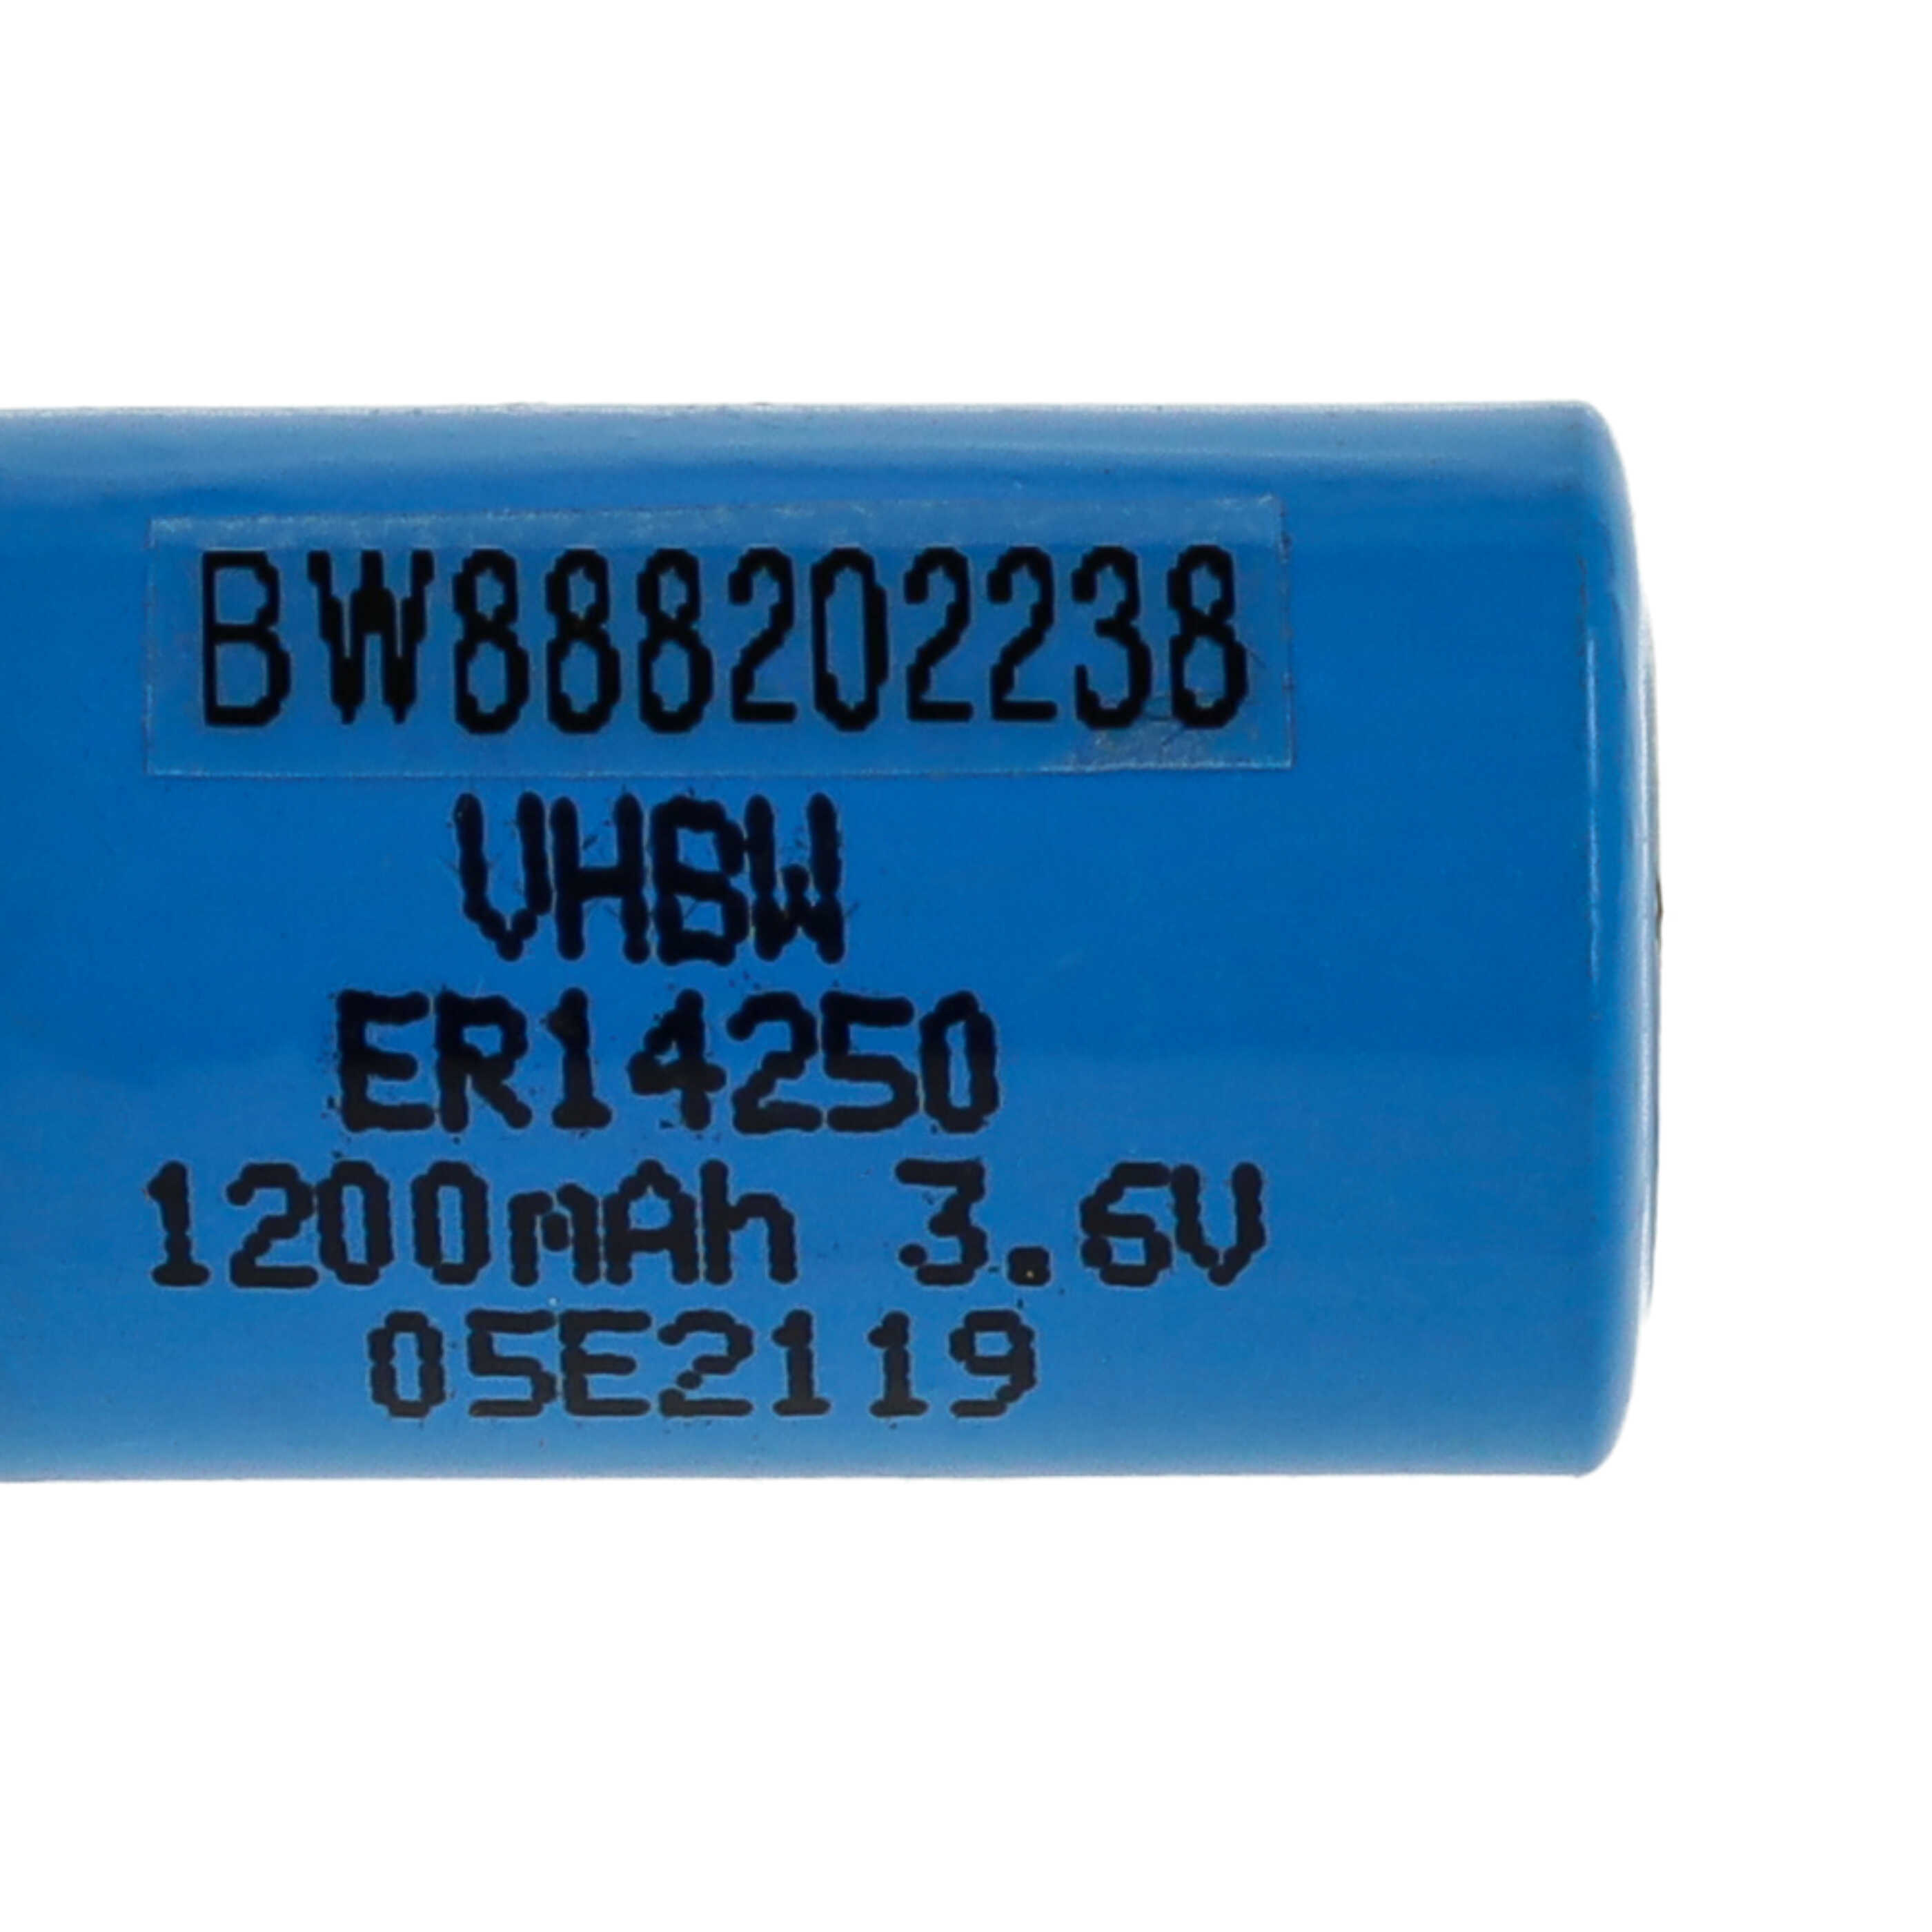 ER14250 Spezial-Batterie als Ersatz für 1/2AA, 1770-XZ, 3B26, 418-0076, 60-0576-100 - 1200mAh 3,6V Li-SOCl2